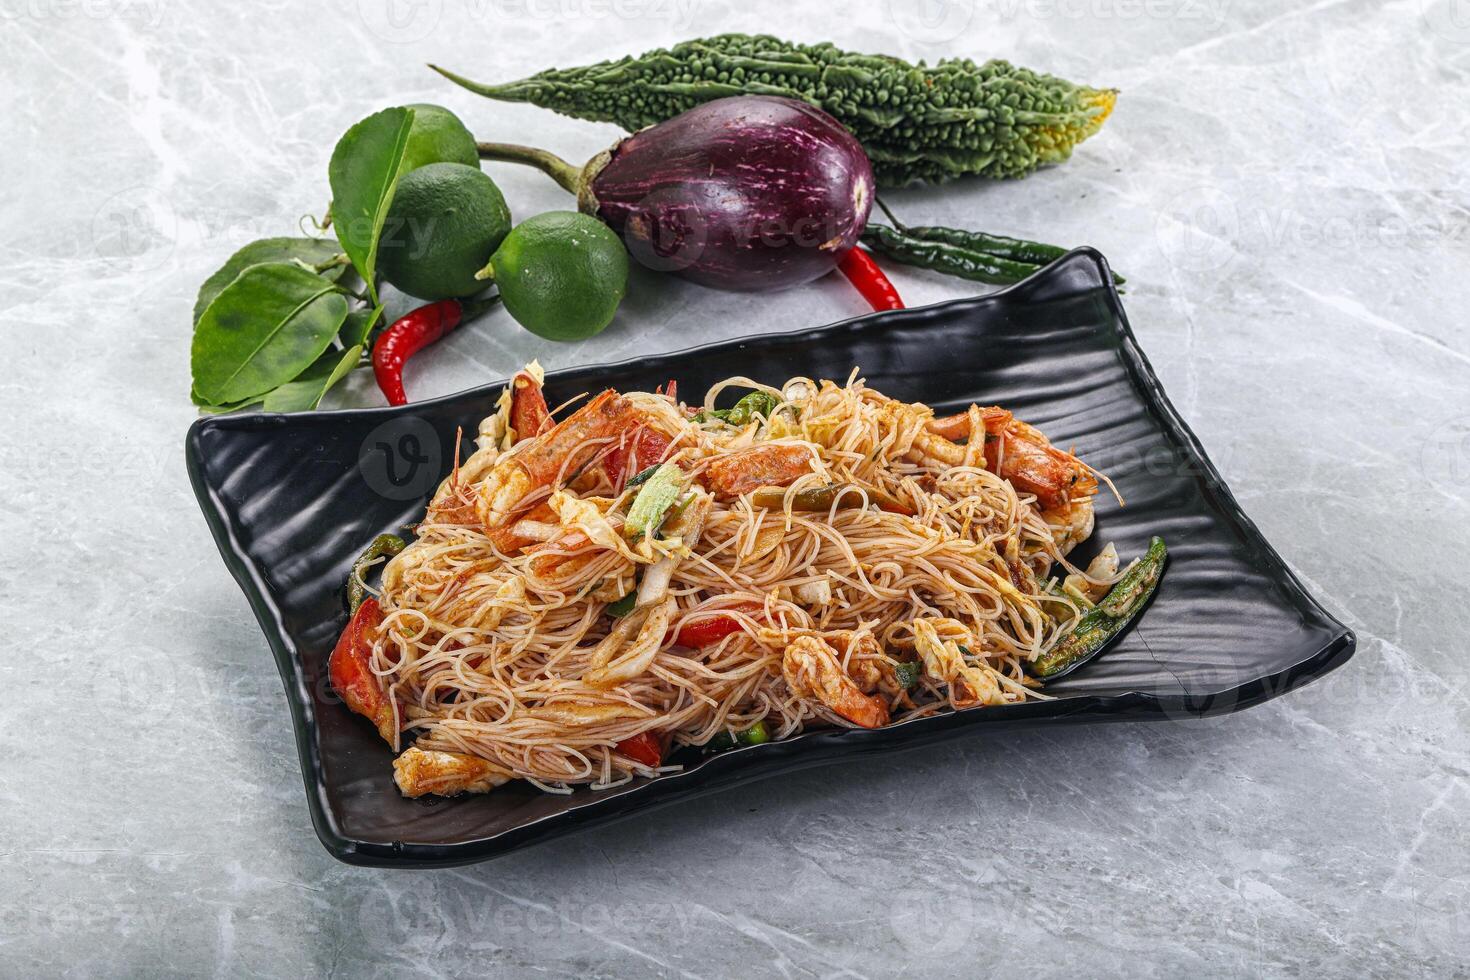 thailändisch würzig Nudeln Salat mit Garnelen foto